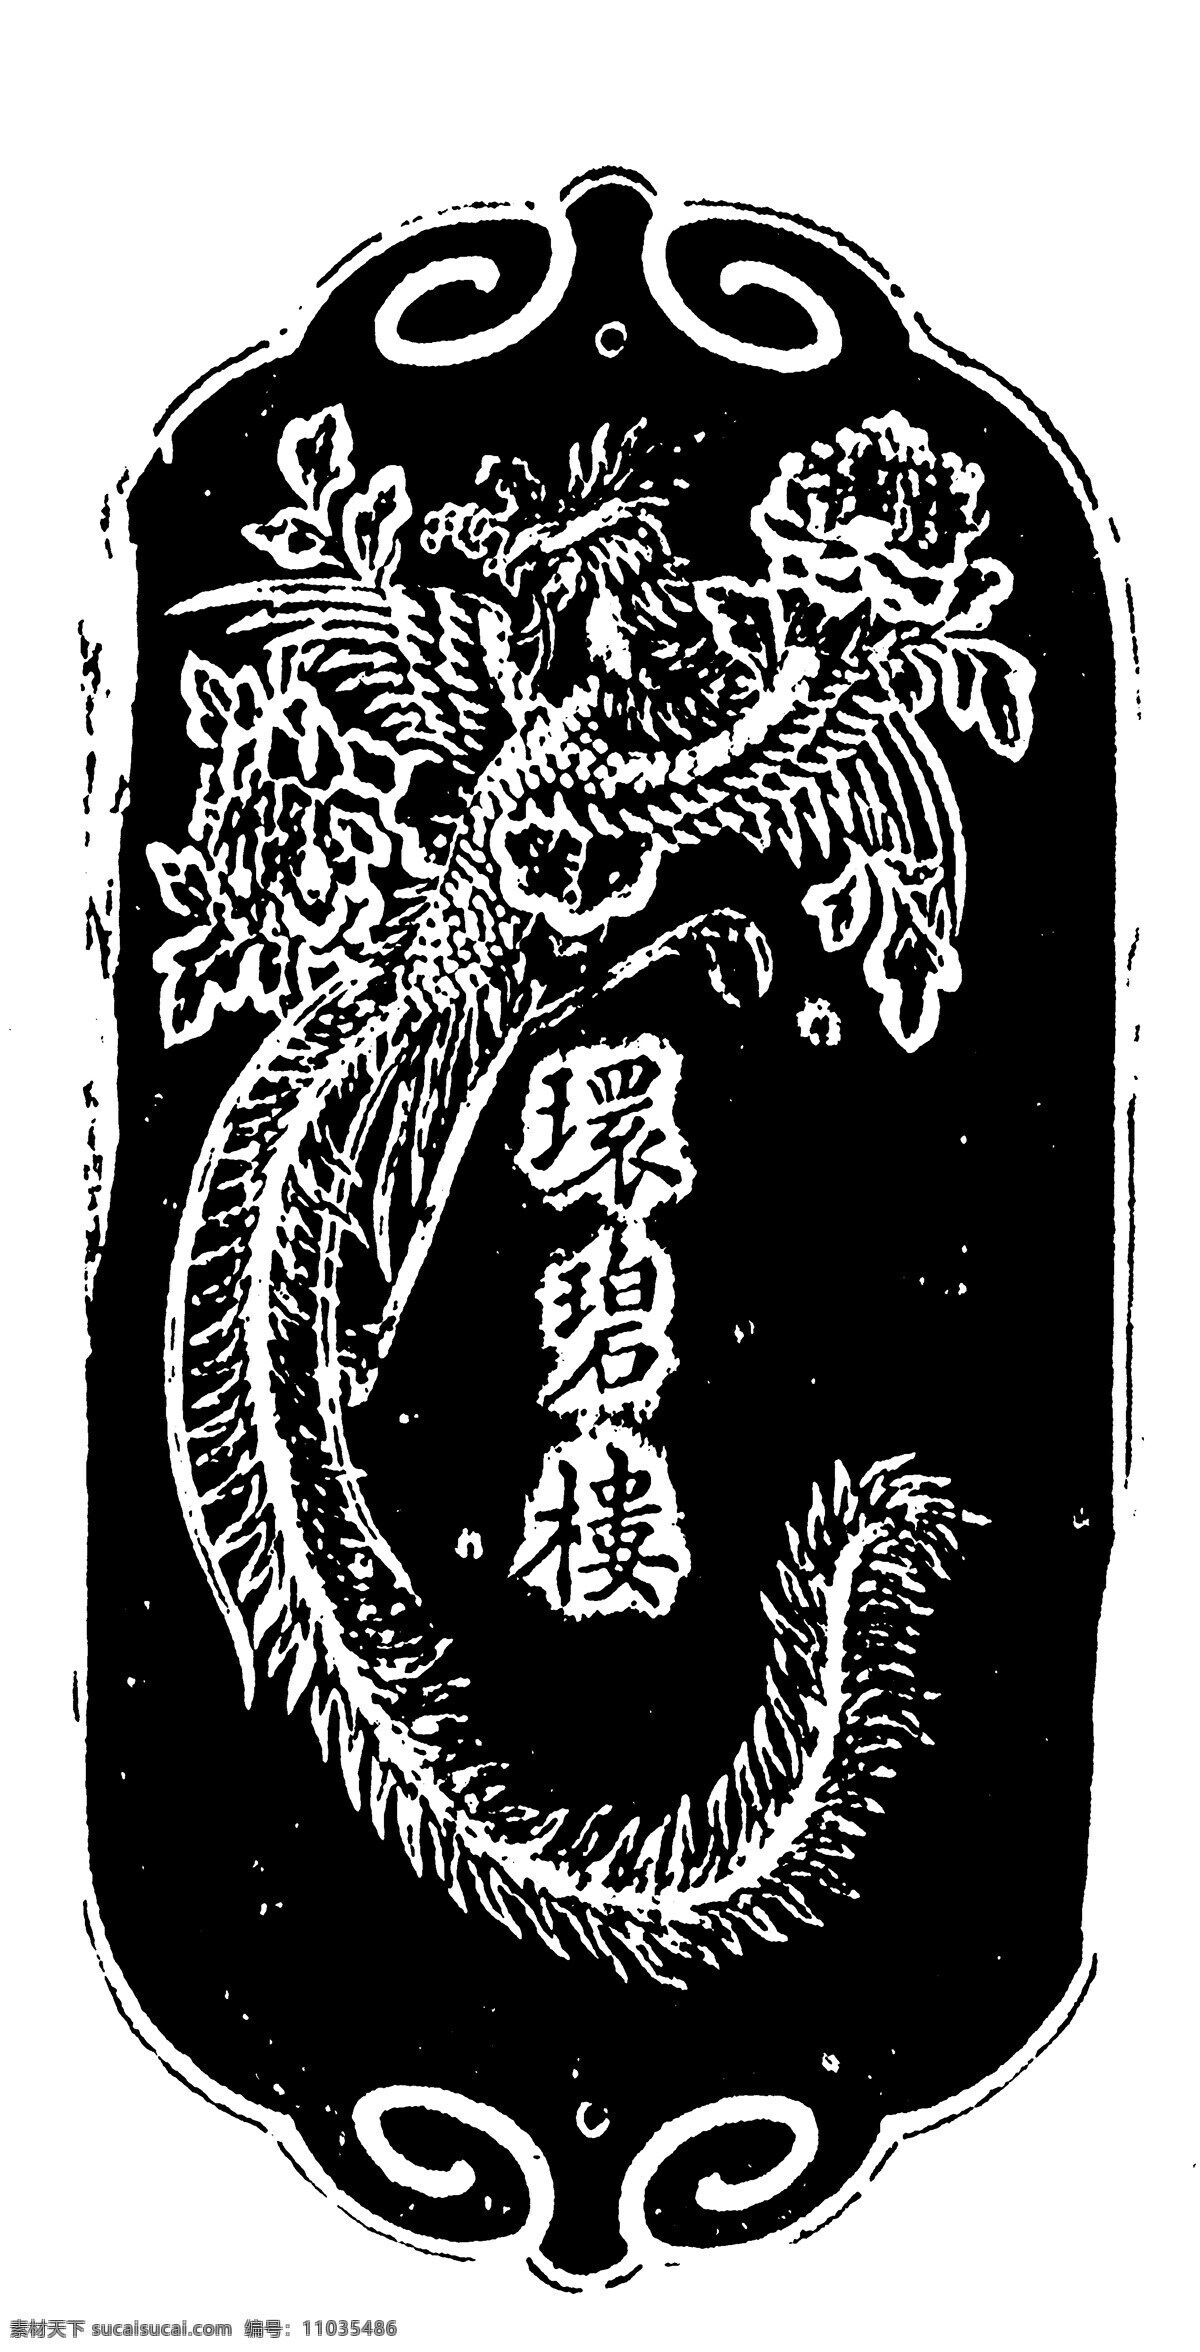 清代龙凤图案 中国 传统 图案 中国传统图案 设计素材 龙凤图纹 装饰图案 书画美术 黑色